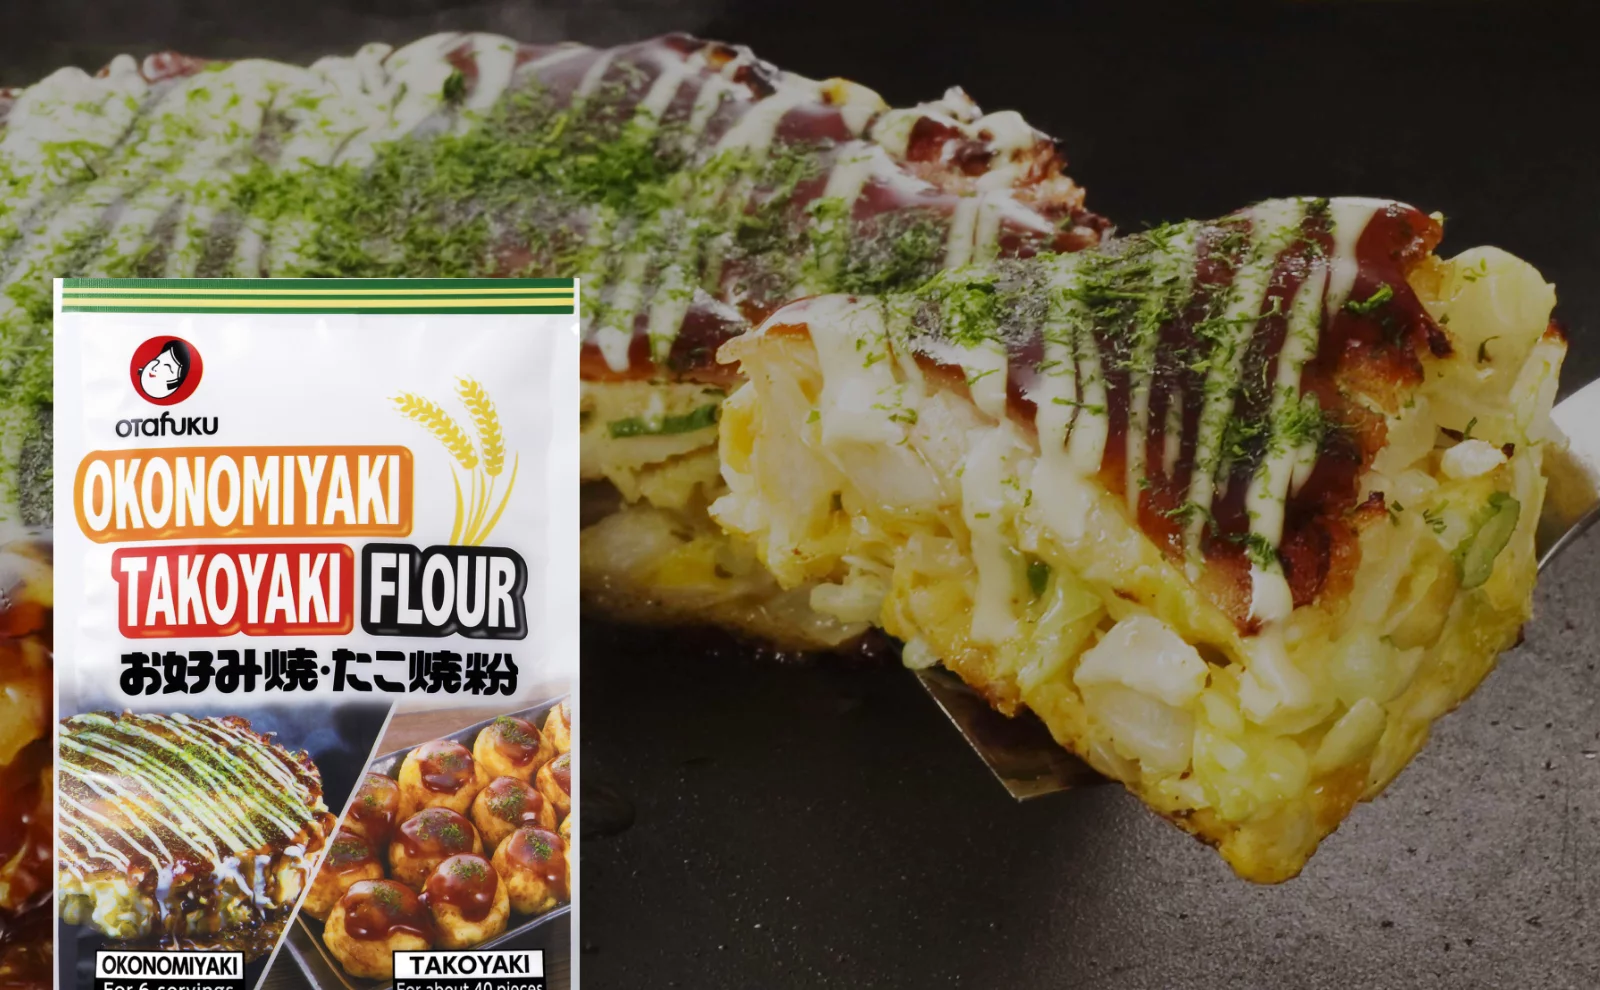 Okonomiyaki-Takoyaki Flour